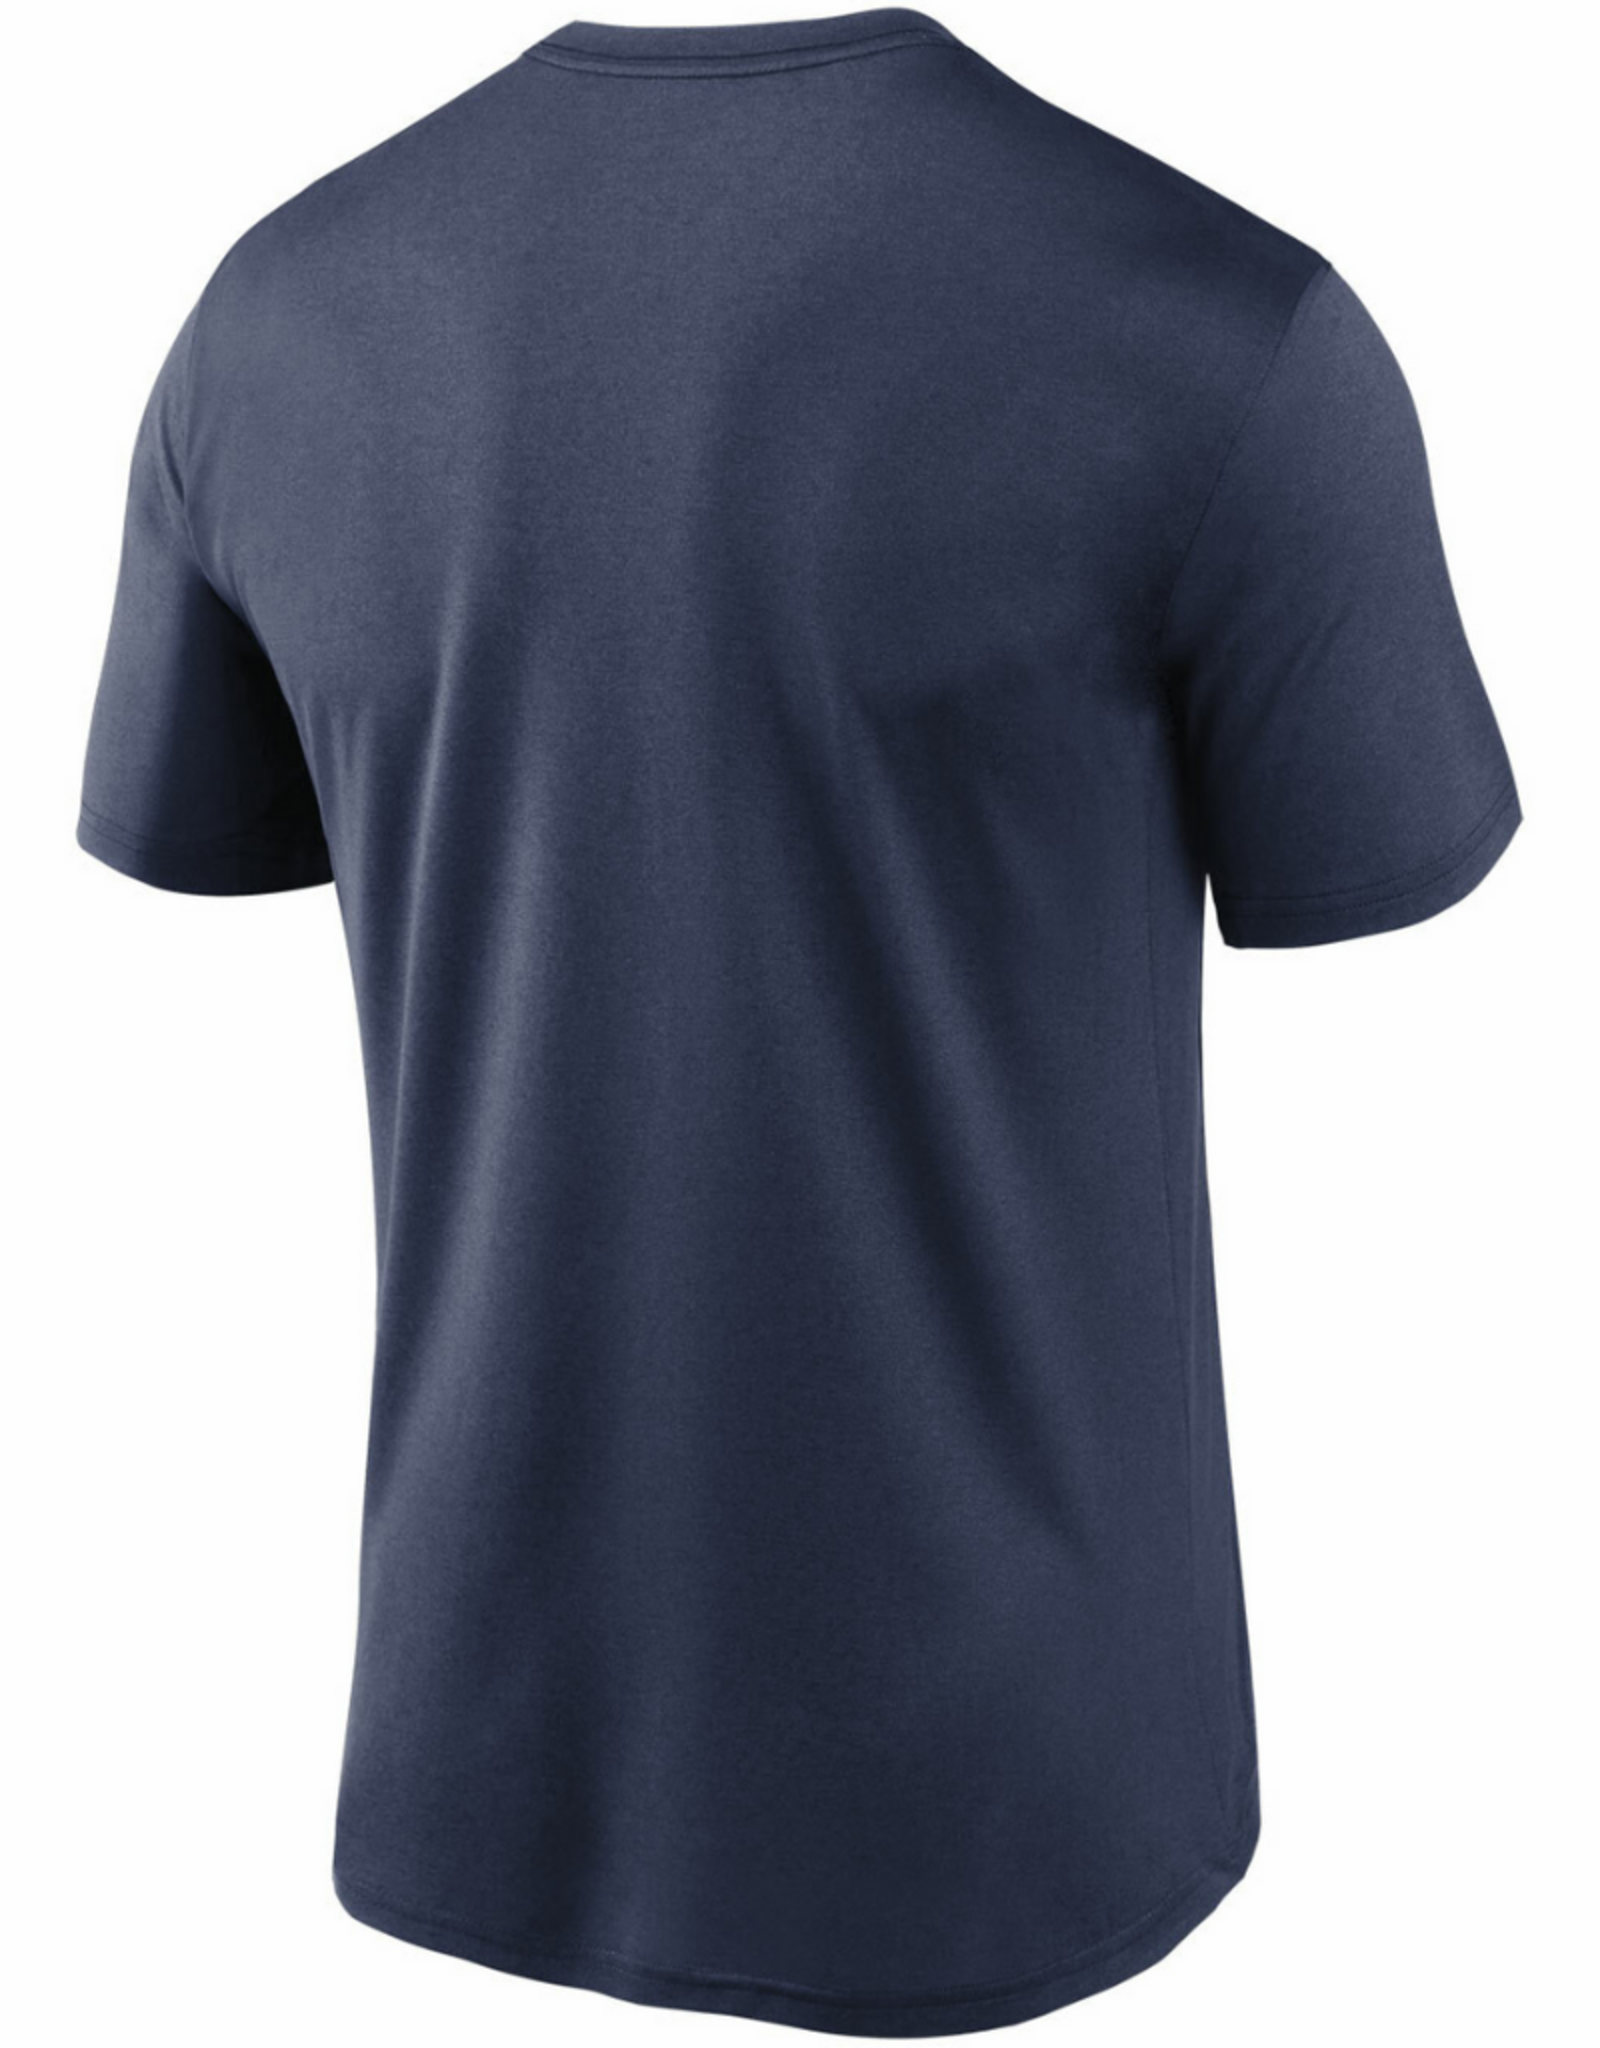 Men's City Swoosh T-Shirt New York Yankees Navy